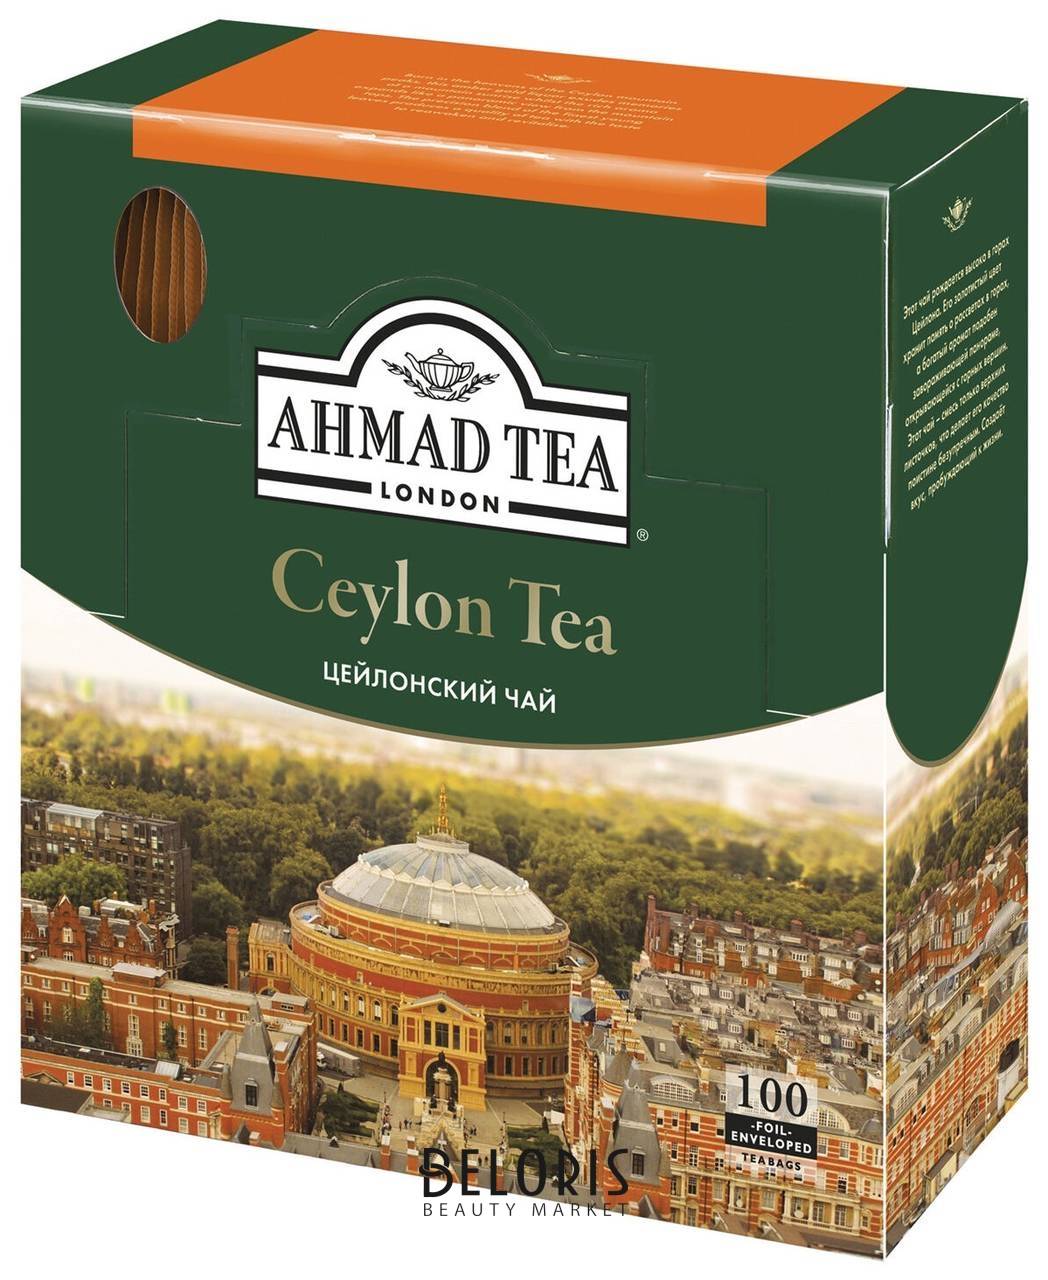 Чай Ahmad Ceylon Tea, черный, 100 пакетиков с ярлычками по 2 г, 163i-08 Ahmad Tea